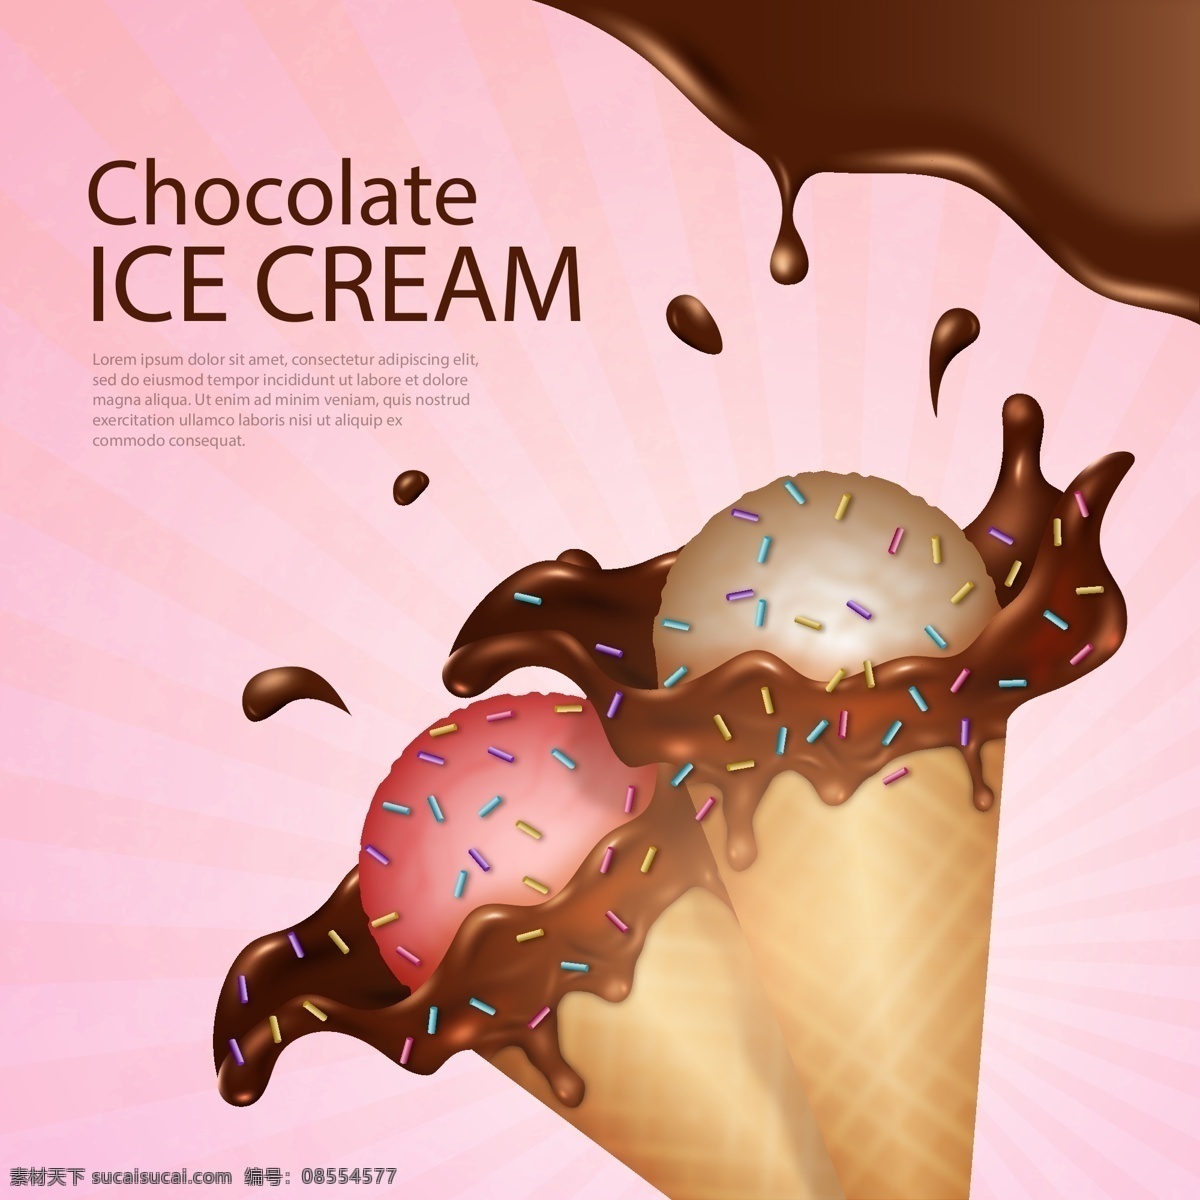 美味 冰淇淋 广告 甜品 巧克力 冷饮海报 冰淇淋广告 矢量 高清图片